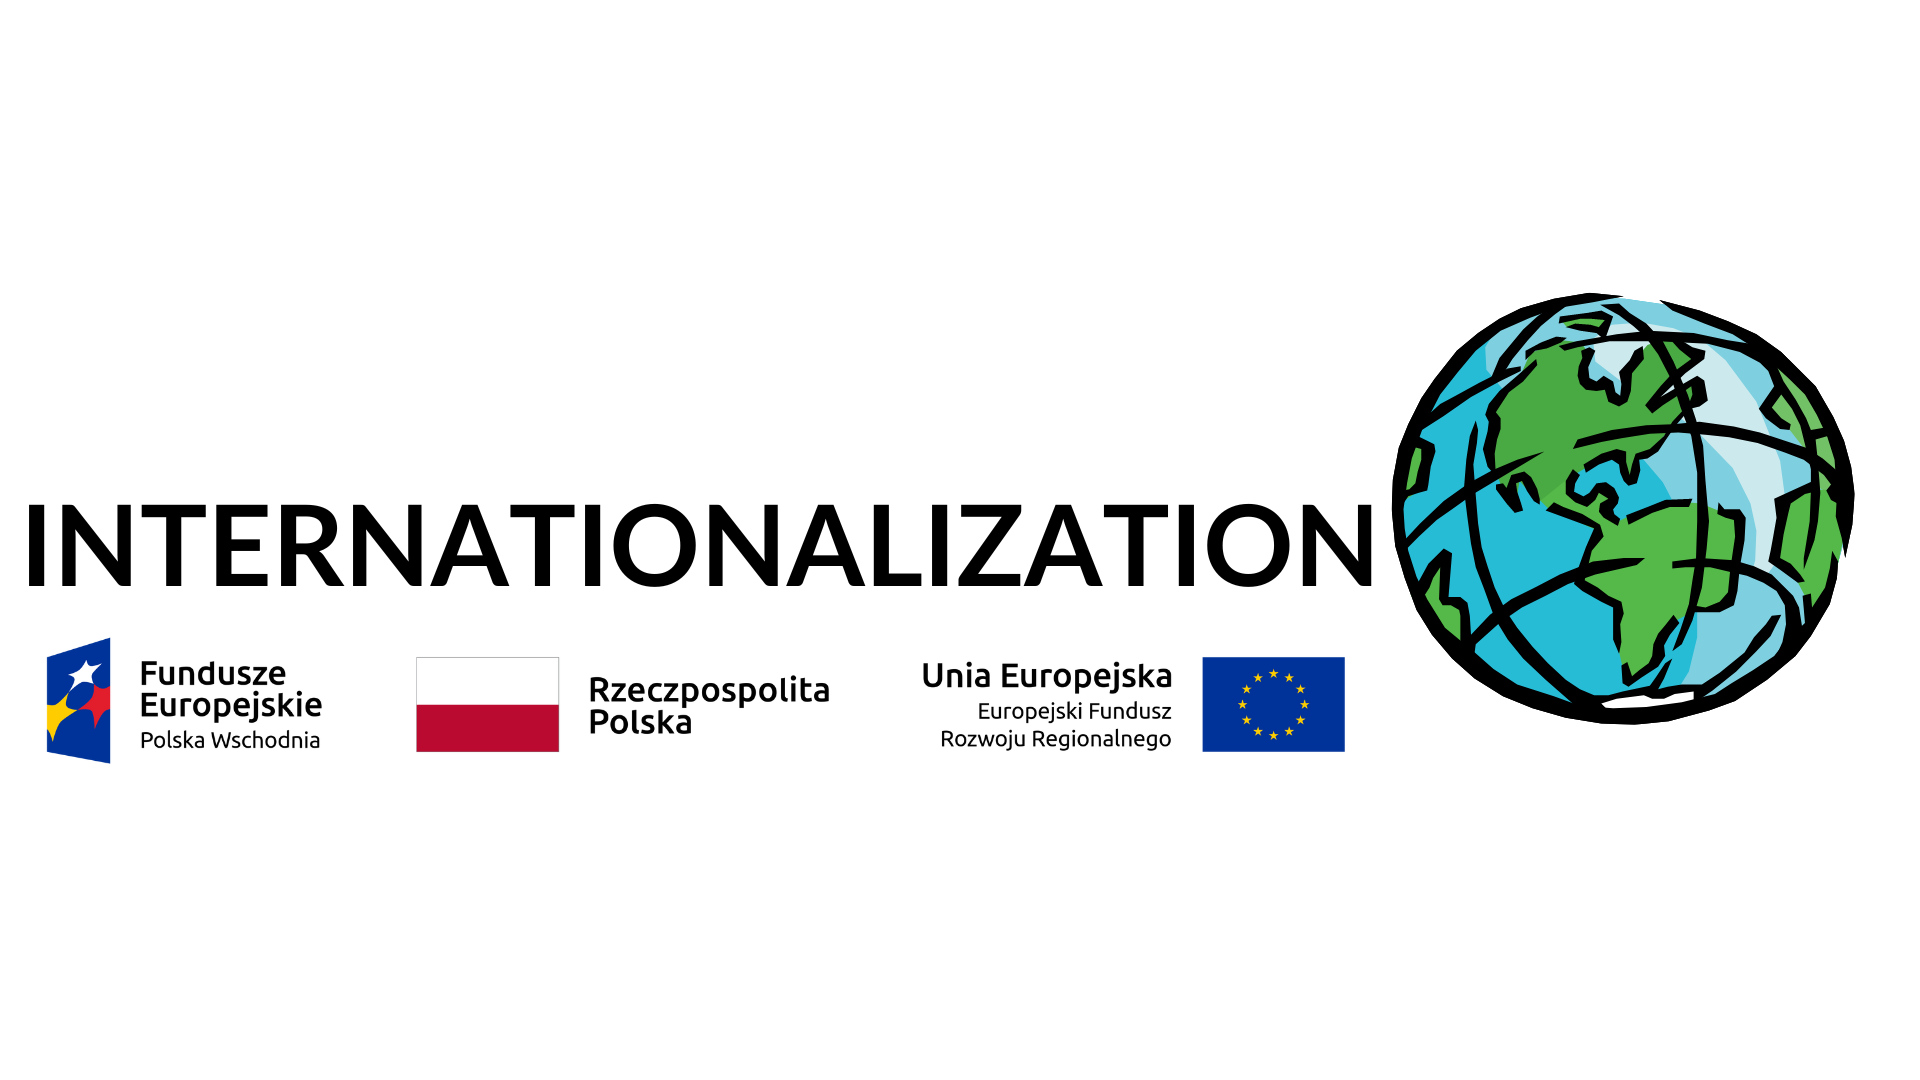 Internationalization